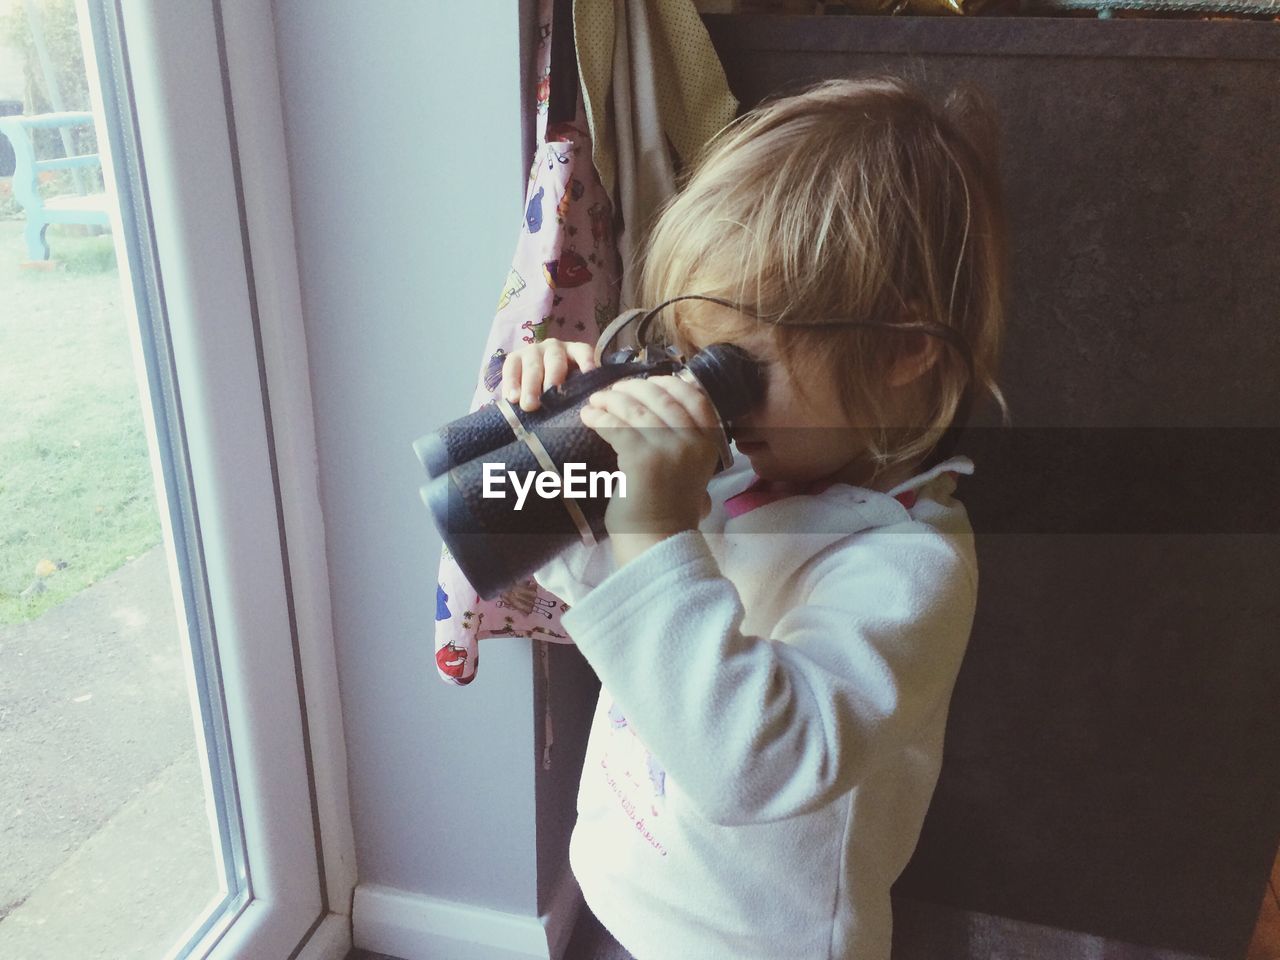 A toddler looking through binoculars 